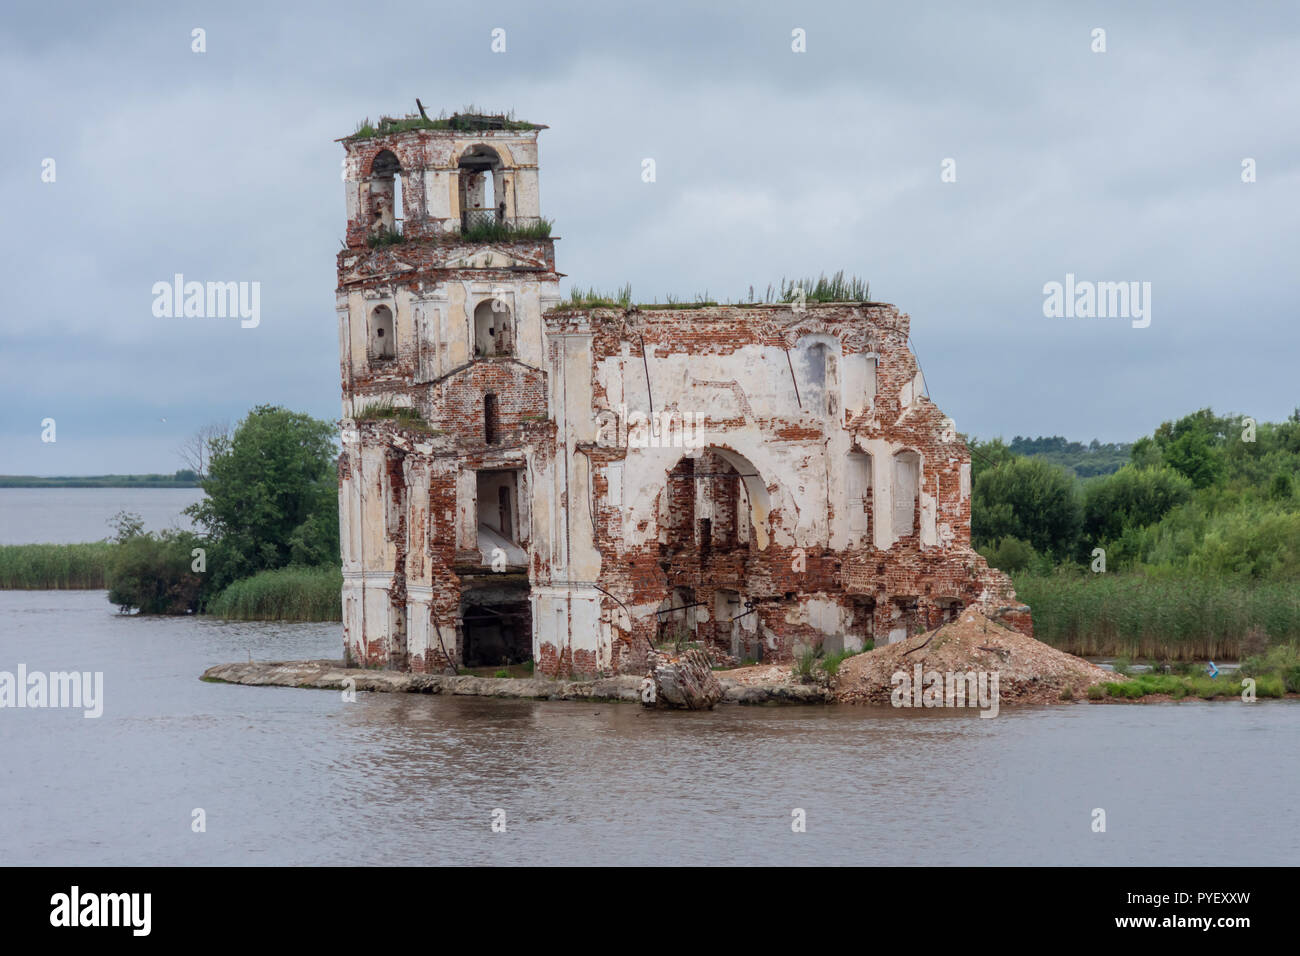 Semi-submerged church in Krokhino, Russia Stock Photo